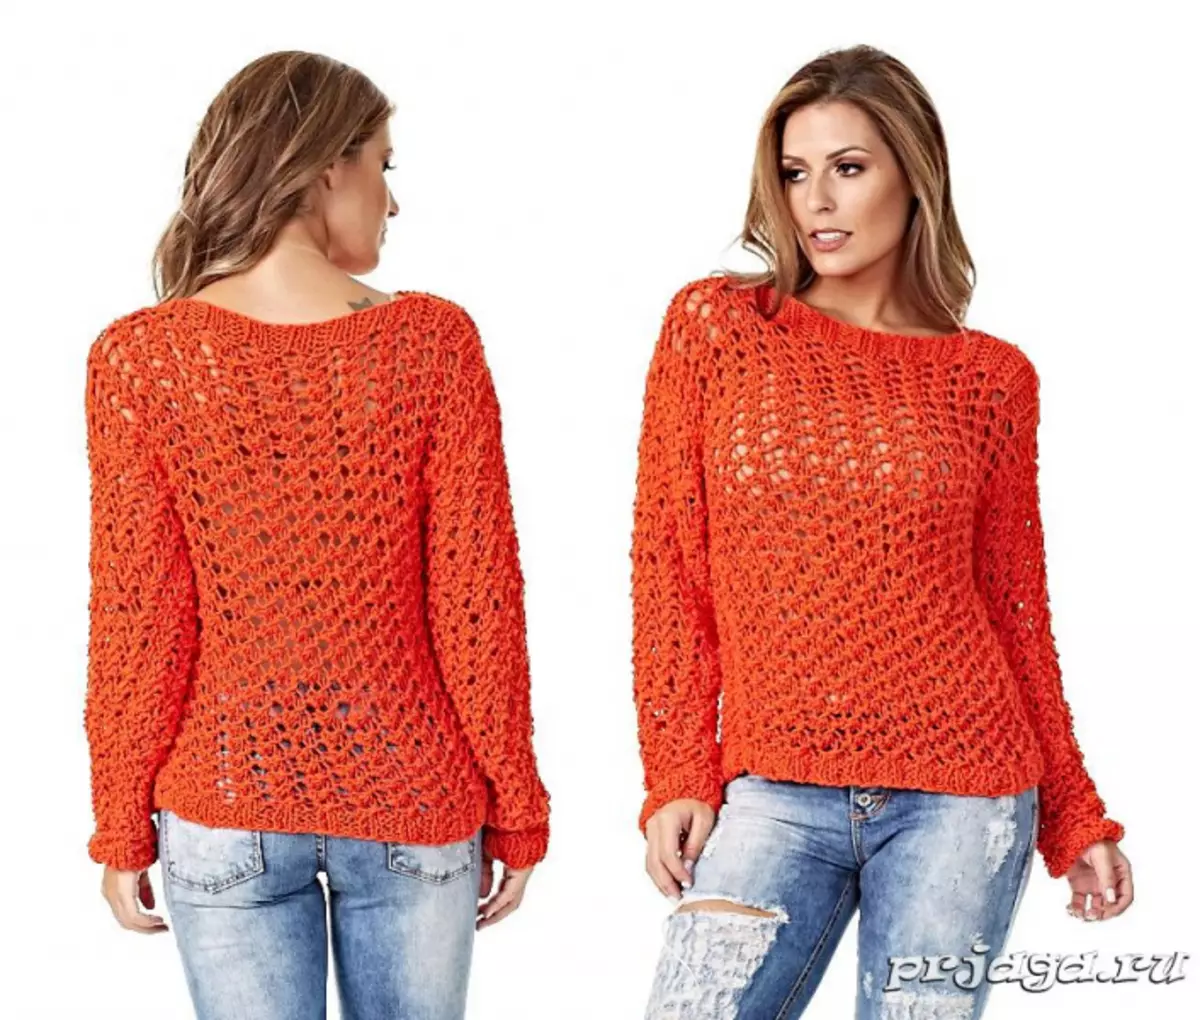 Sweater Female Bi Diagrams Kniting: Meriv çawa bi wêne û vîdyoyê re knit